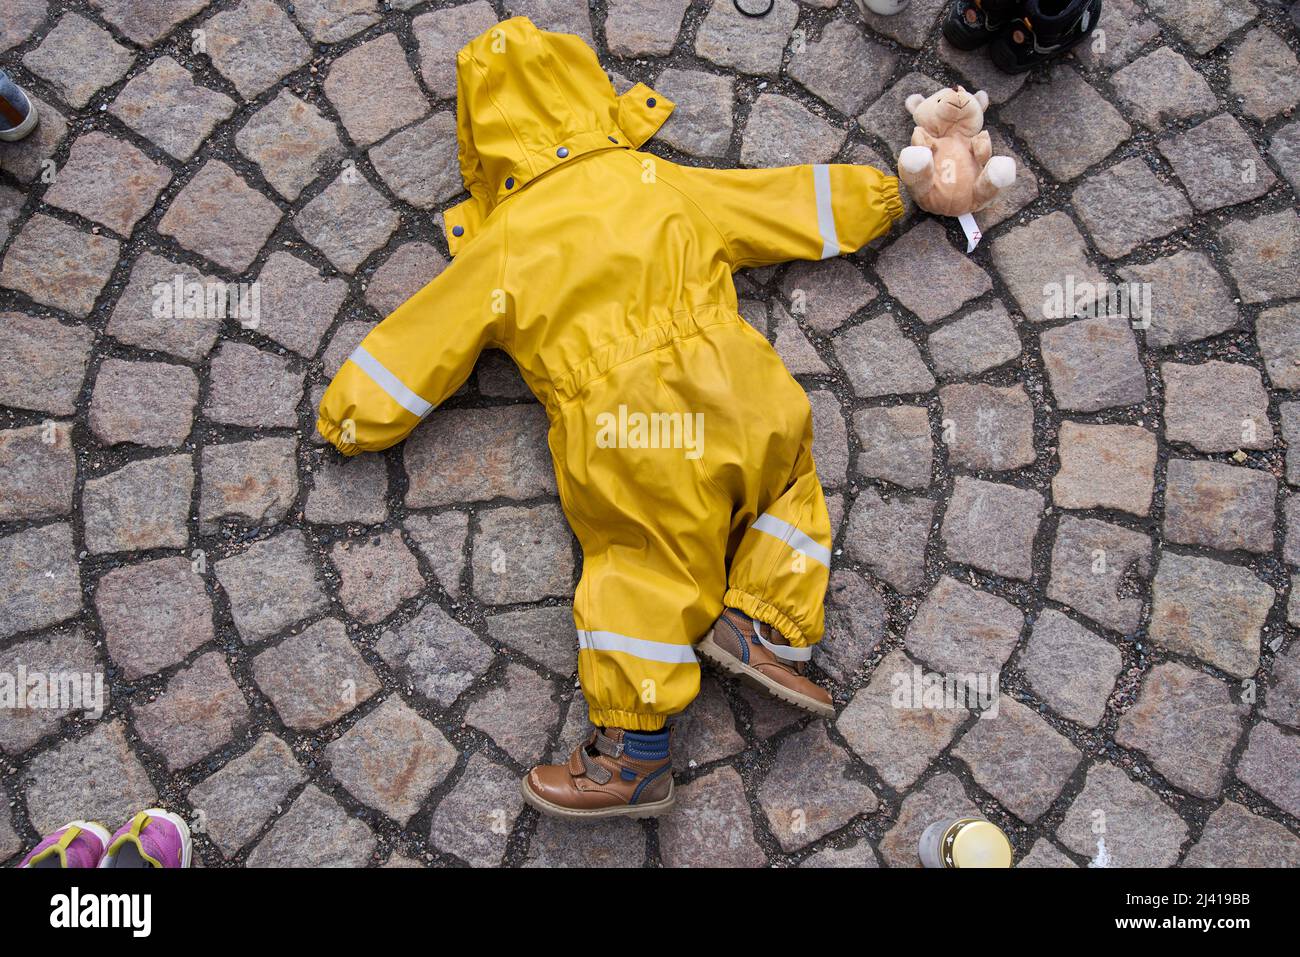 Helsinki, Finlandia - 10 aprile 2022: Tute e scarpe per bambini di colore giallo ritorto nella manifestazione “Mariupol: Crimini di guerra russi” organizzata dall’Ucraina Foto Stock